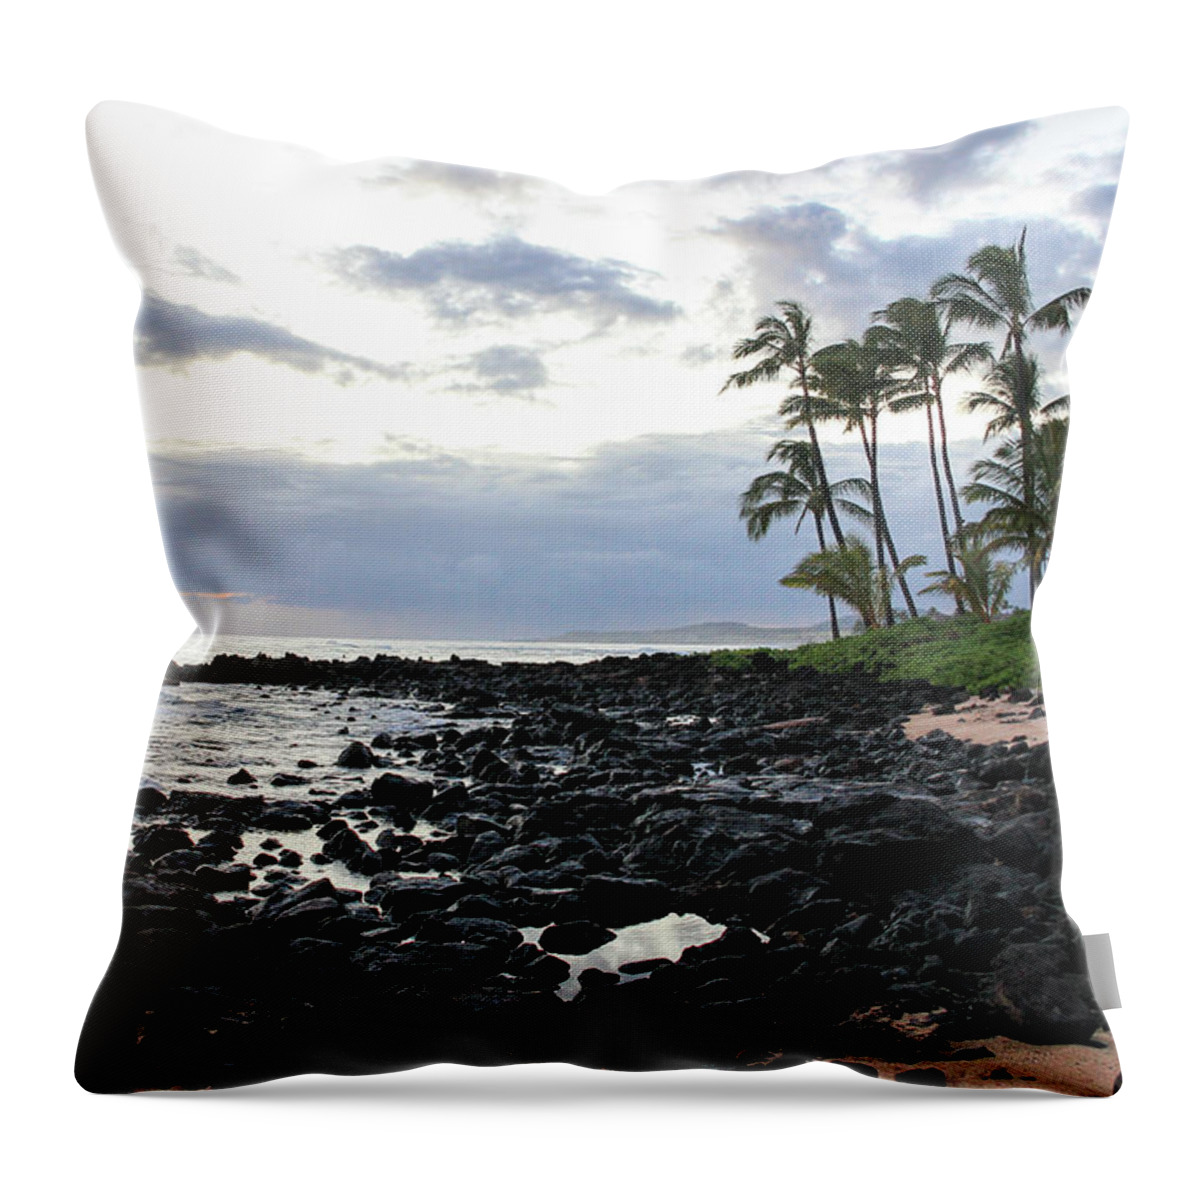 Hawaii Throw Pillow featuring the photograph Grey Sunset by Robert Carter